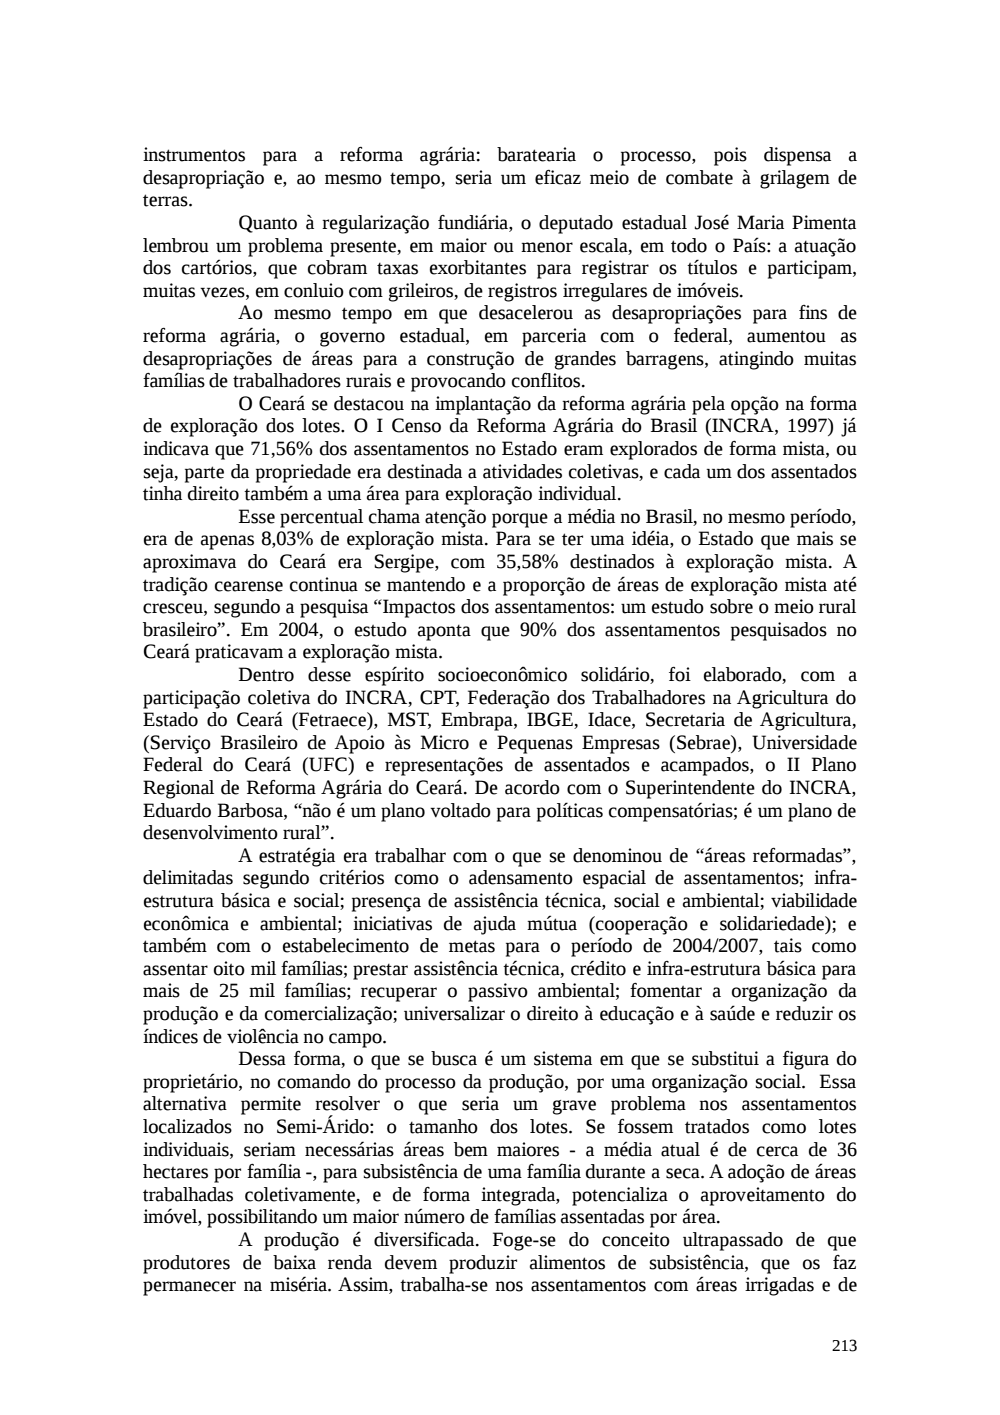 Page 213 from Relatório final da comissão